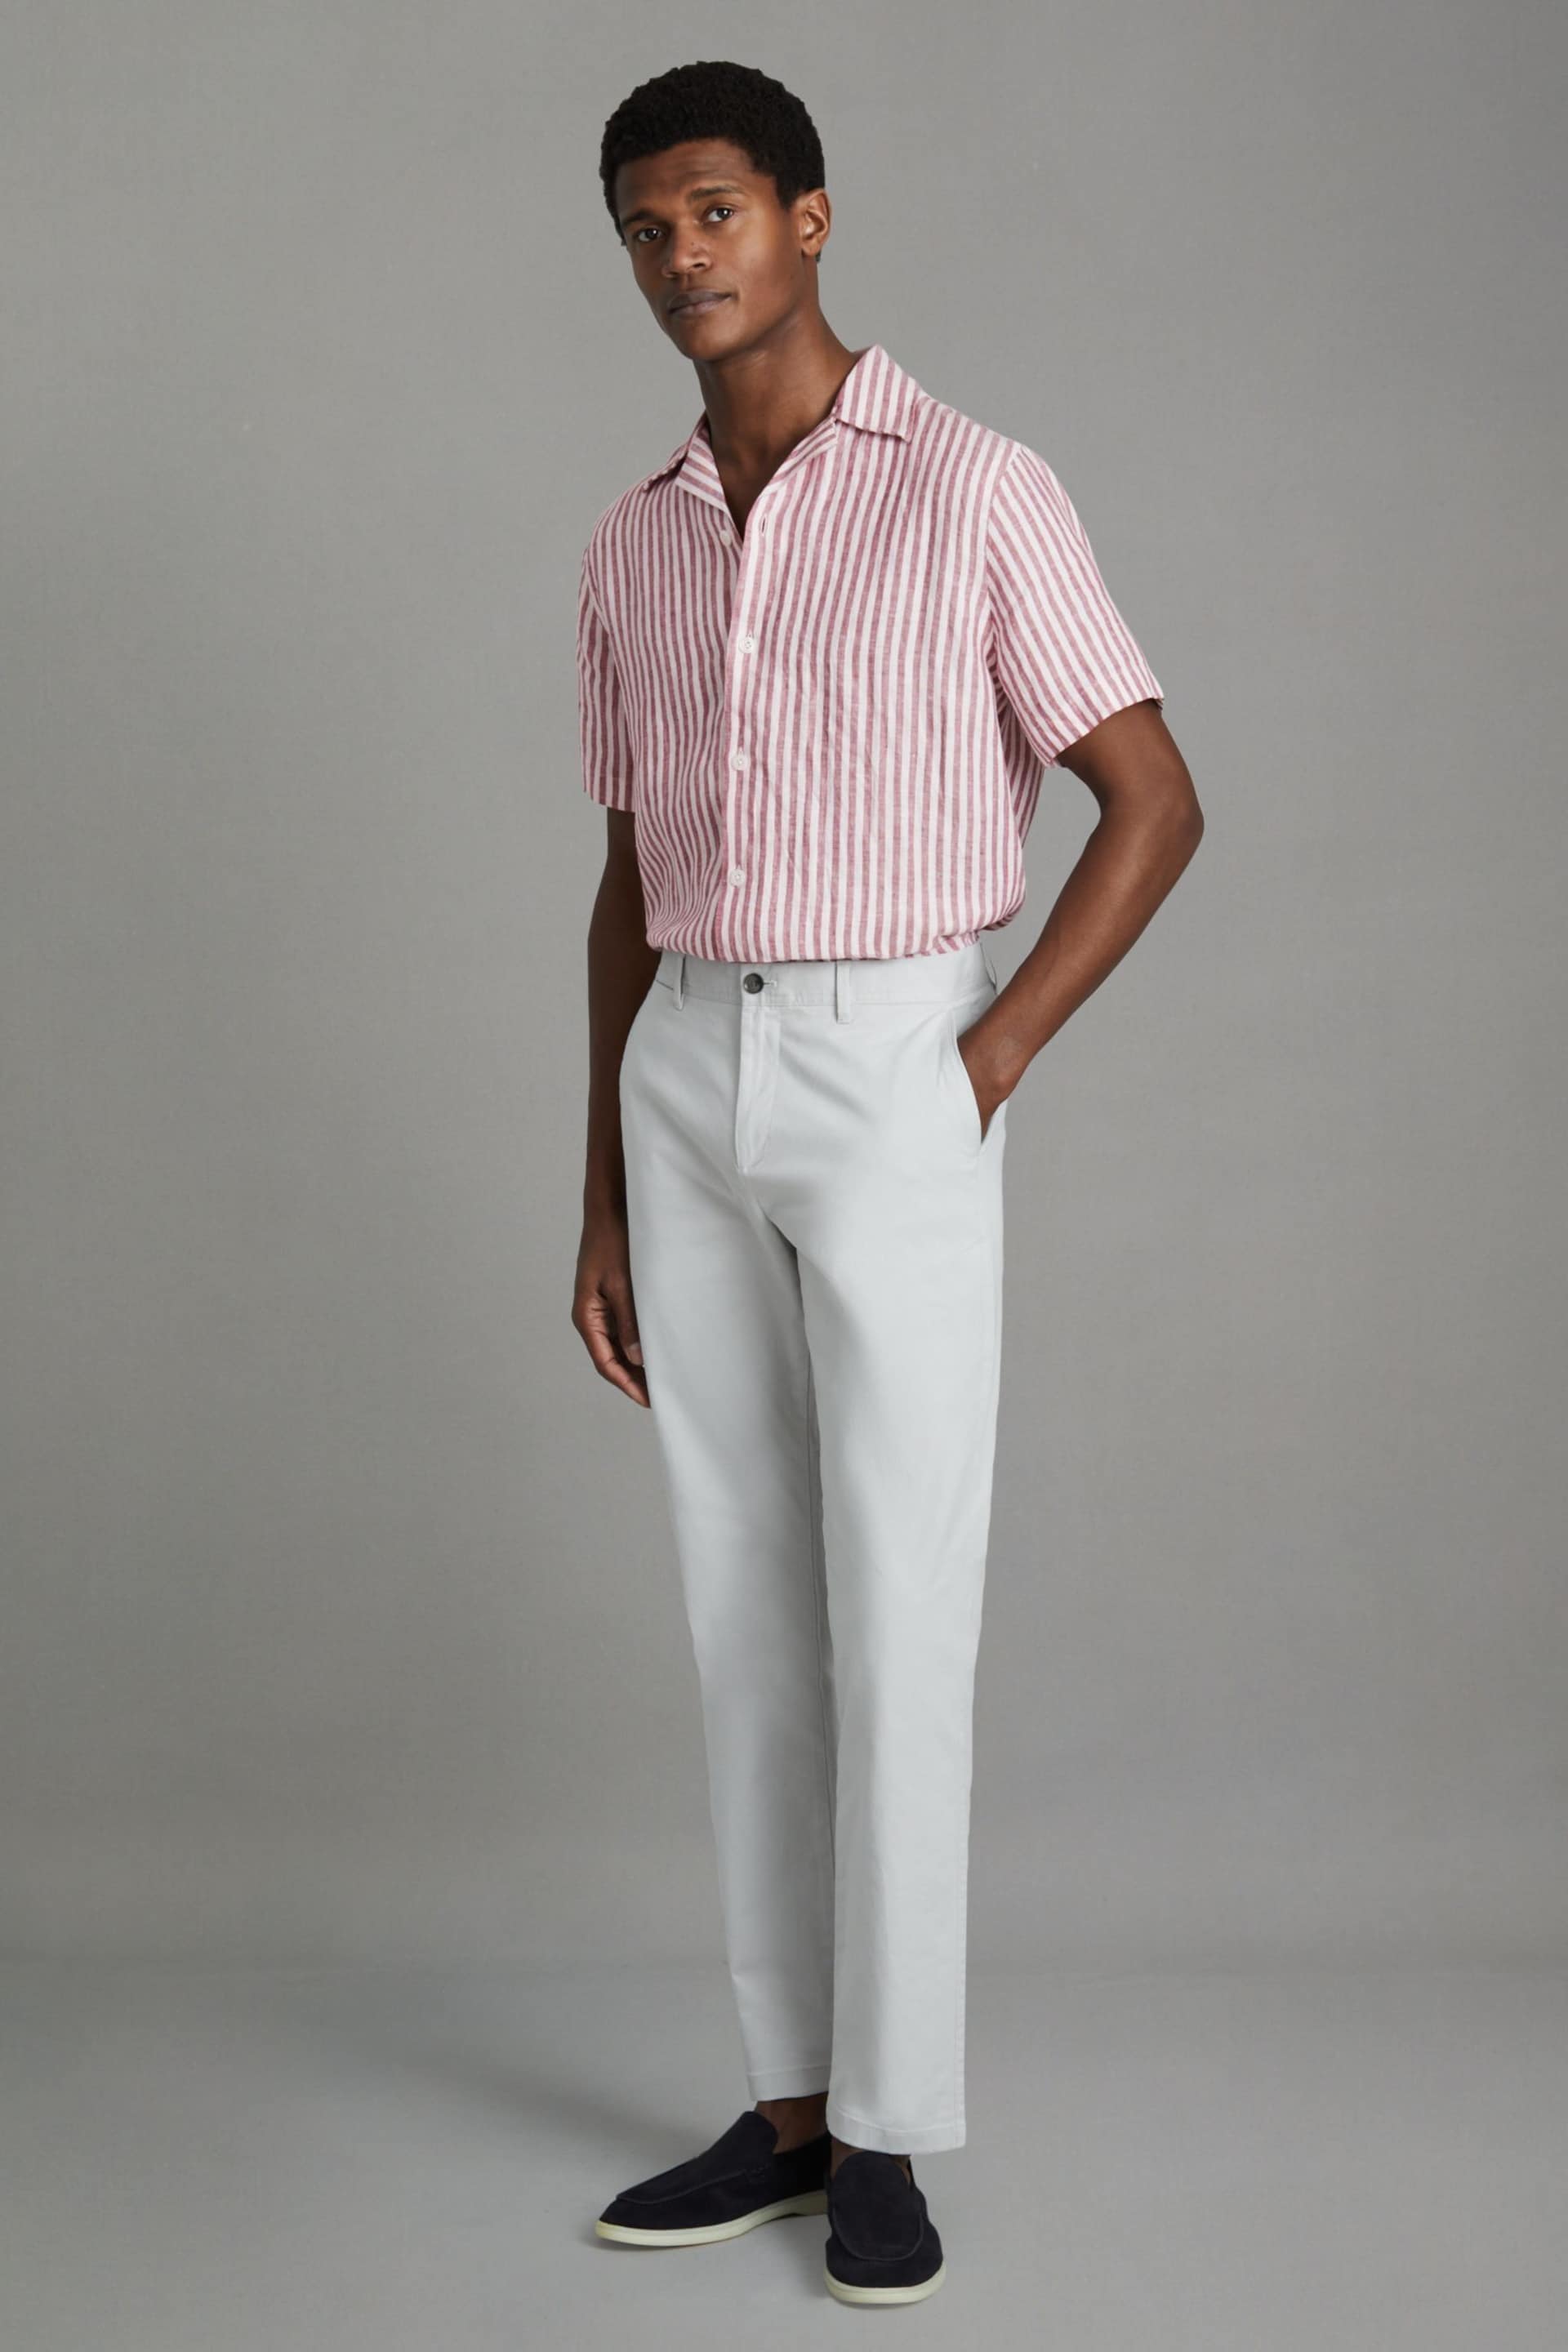 Reiss Pink Stripe Beldi Relaxed Linen Cuban Collar Shirt - Image 6 of 7